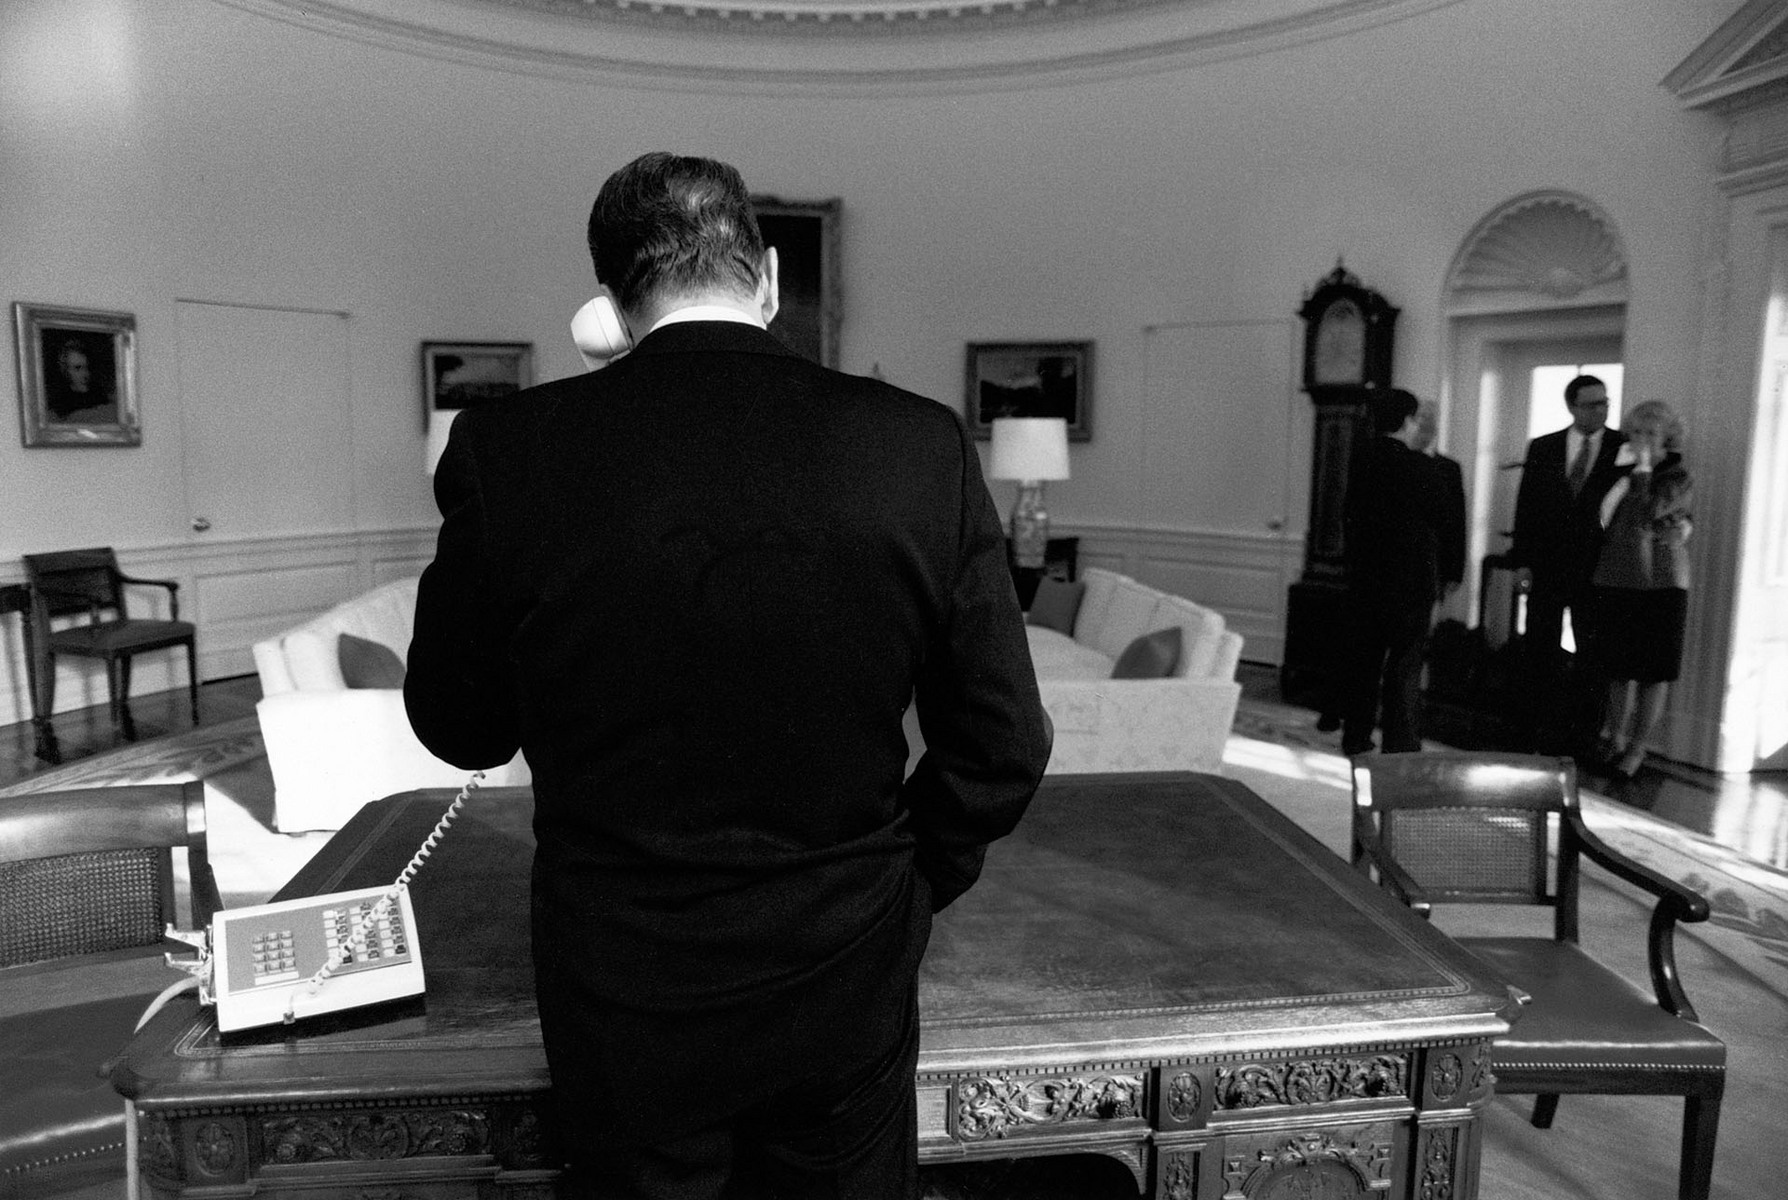  : President Reagan : Pete Souza Photography